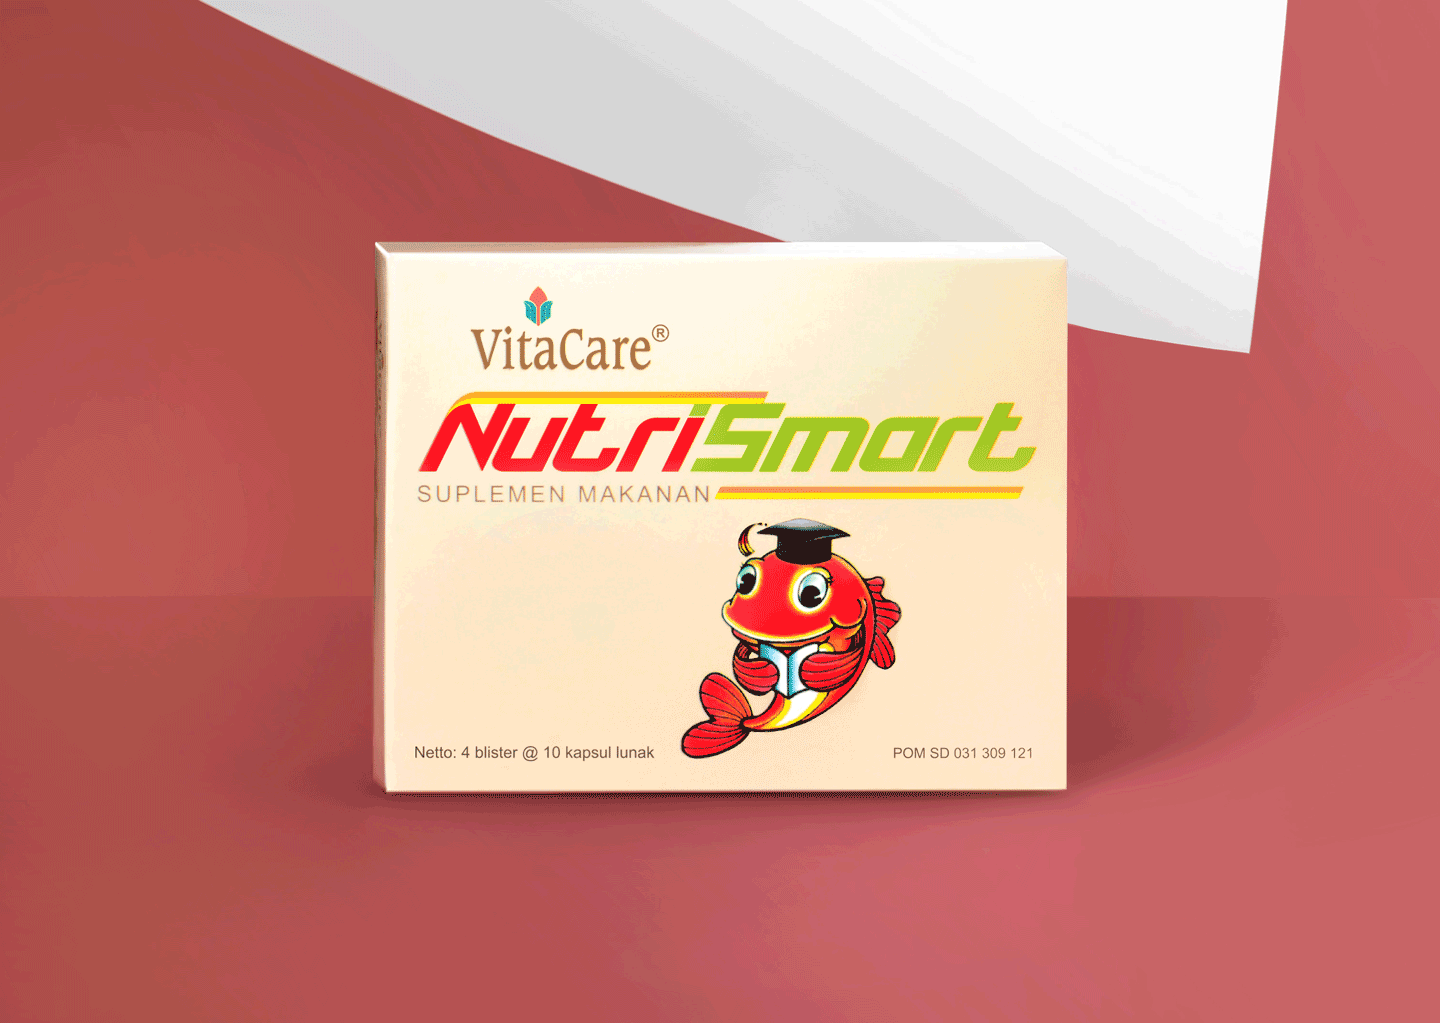 Vitacare Nutrismart